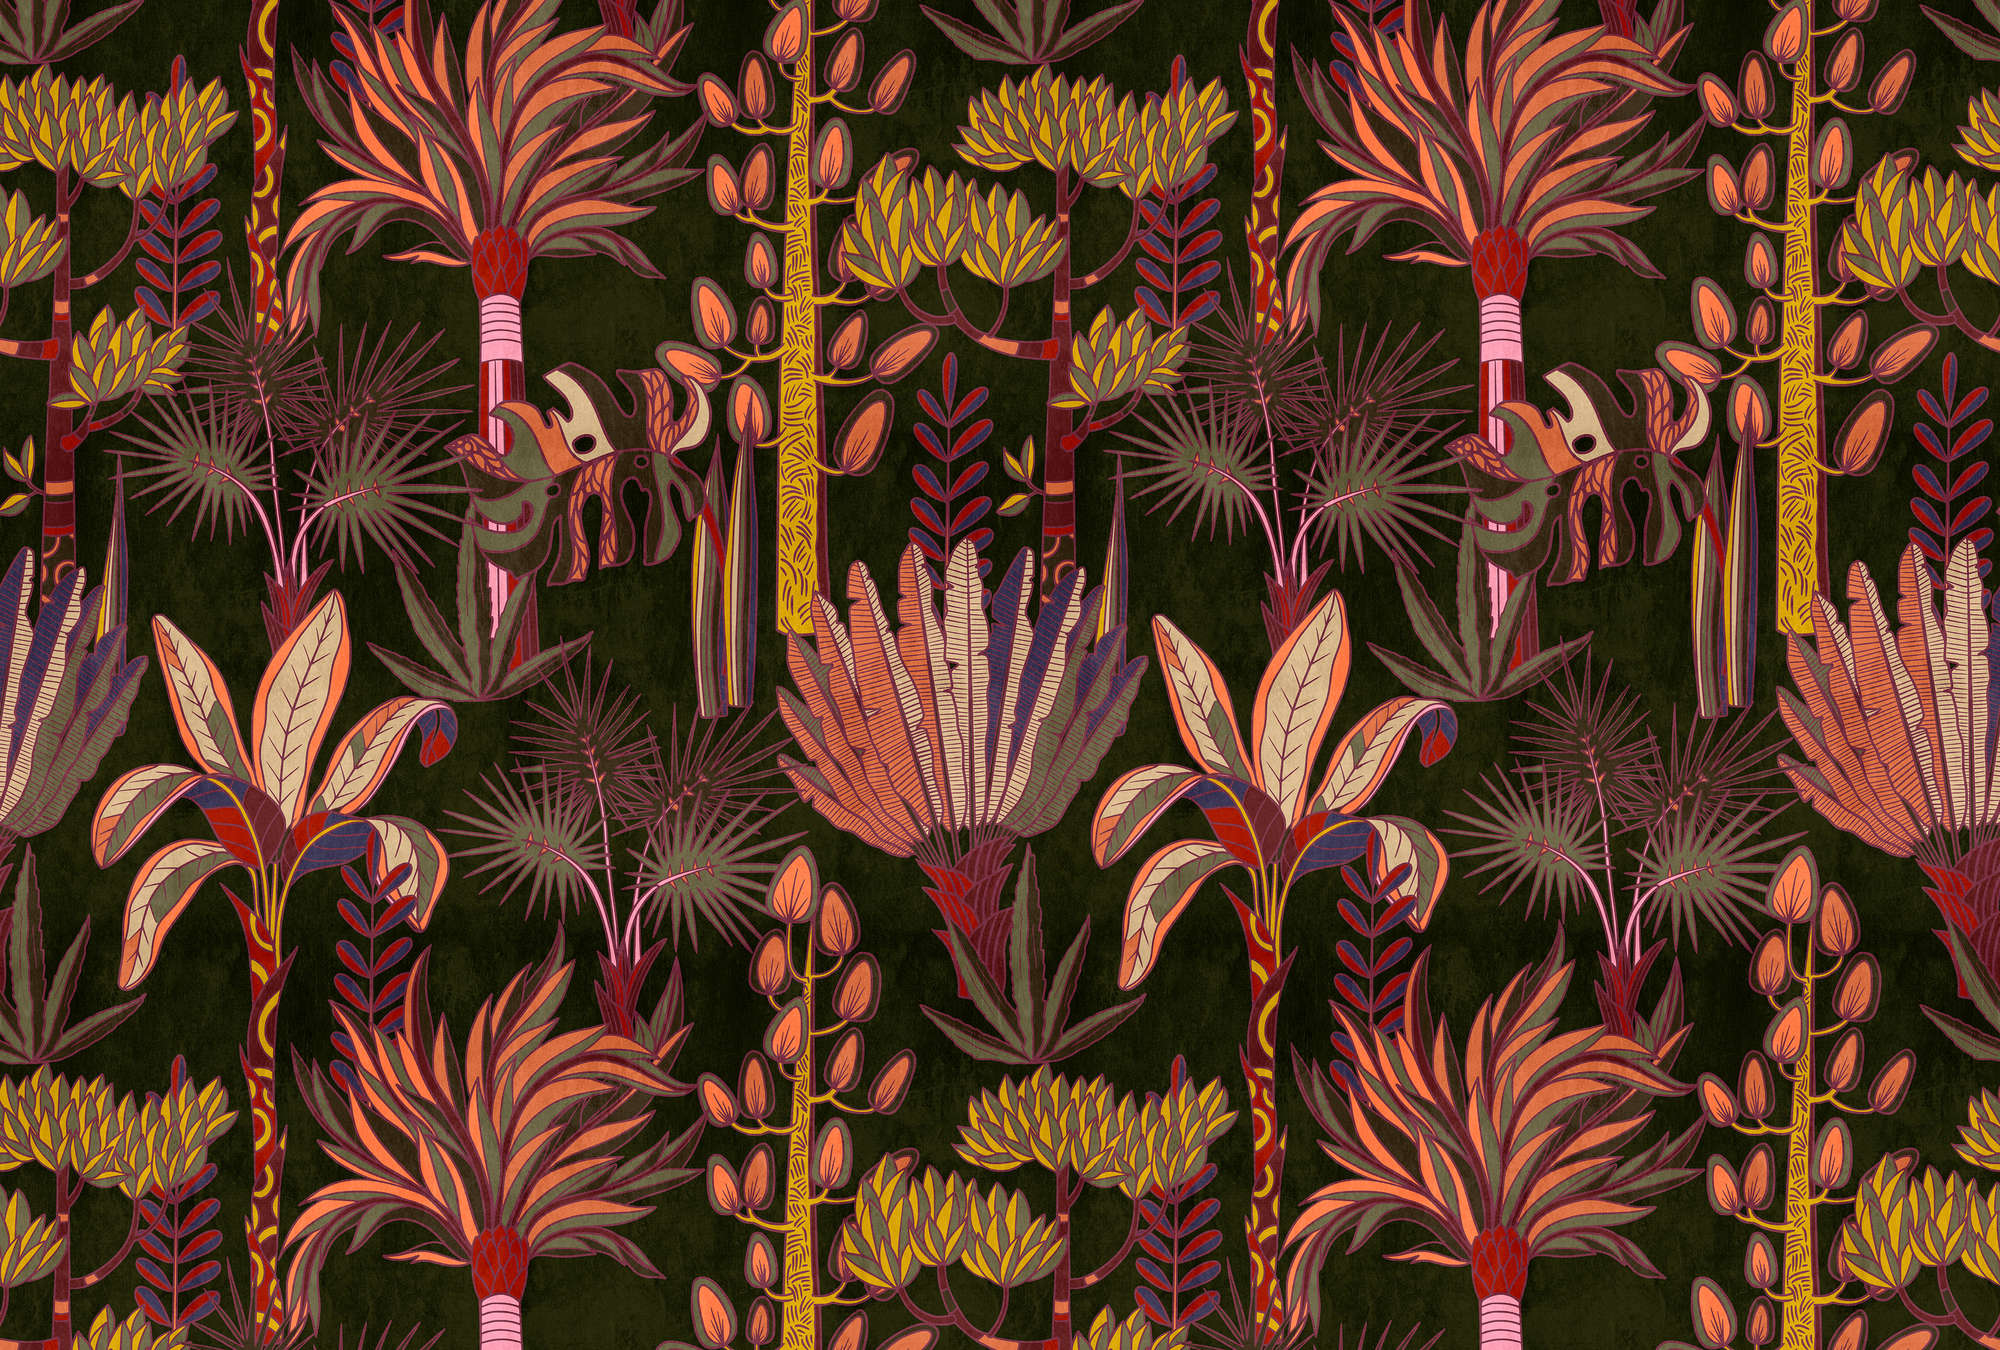             Lagos 1 - Papier peint panoramique palmiers style graphique coloré en textile
        